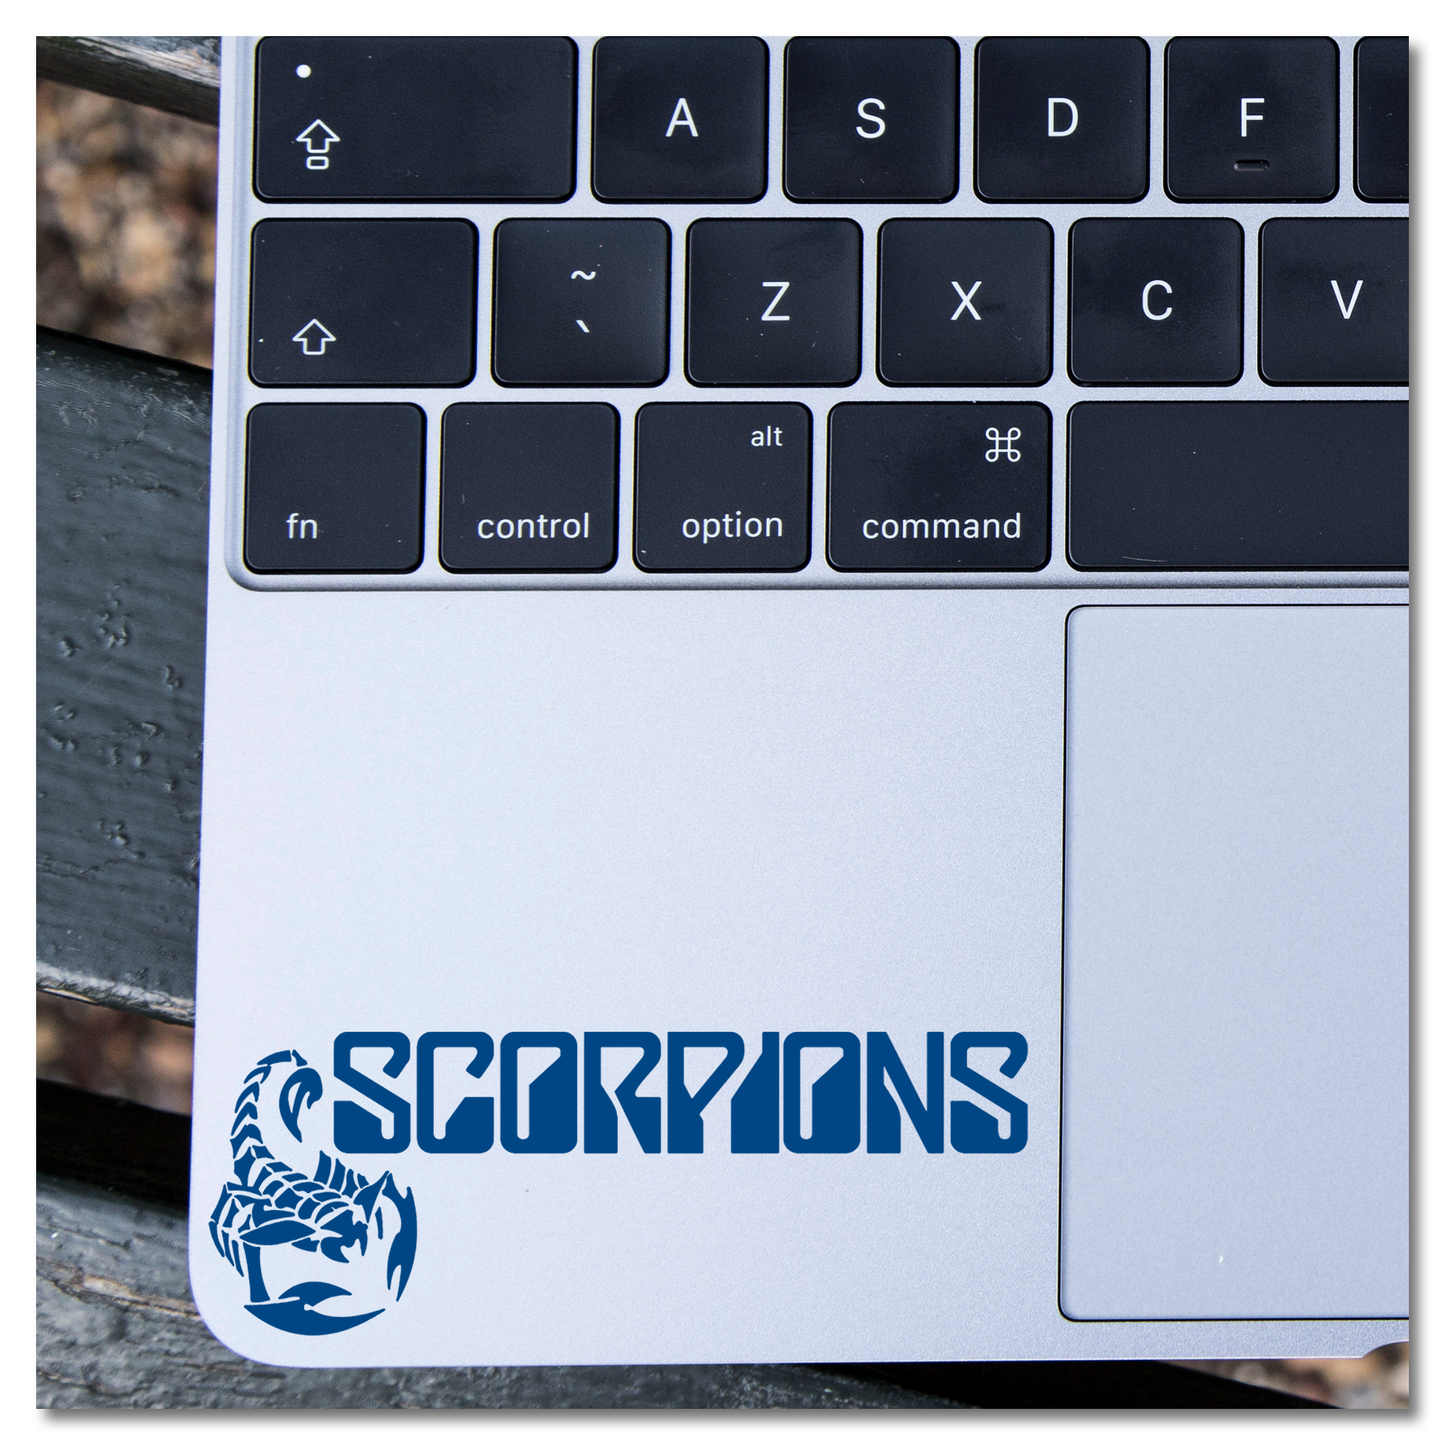 Scorpions Vinyl Decal Sticker